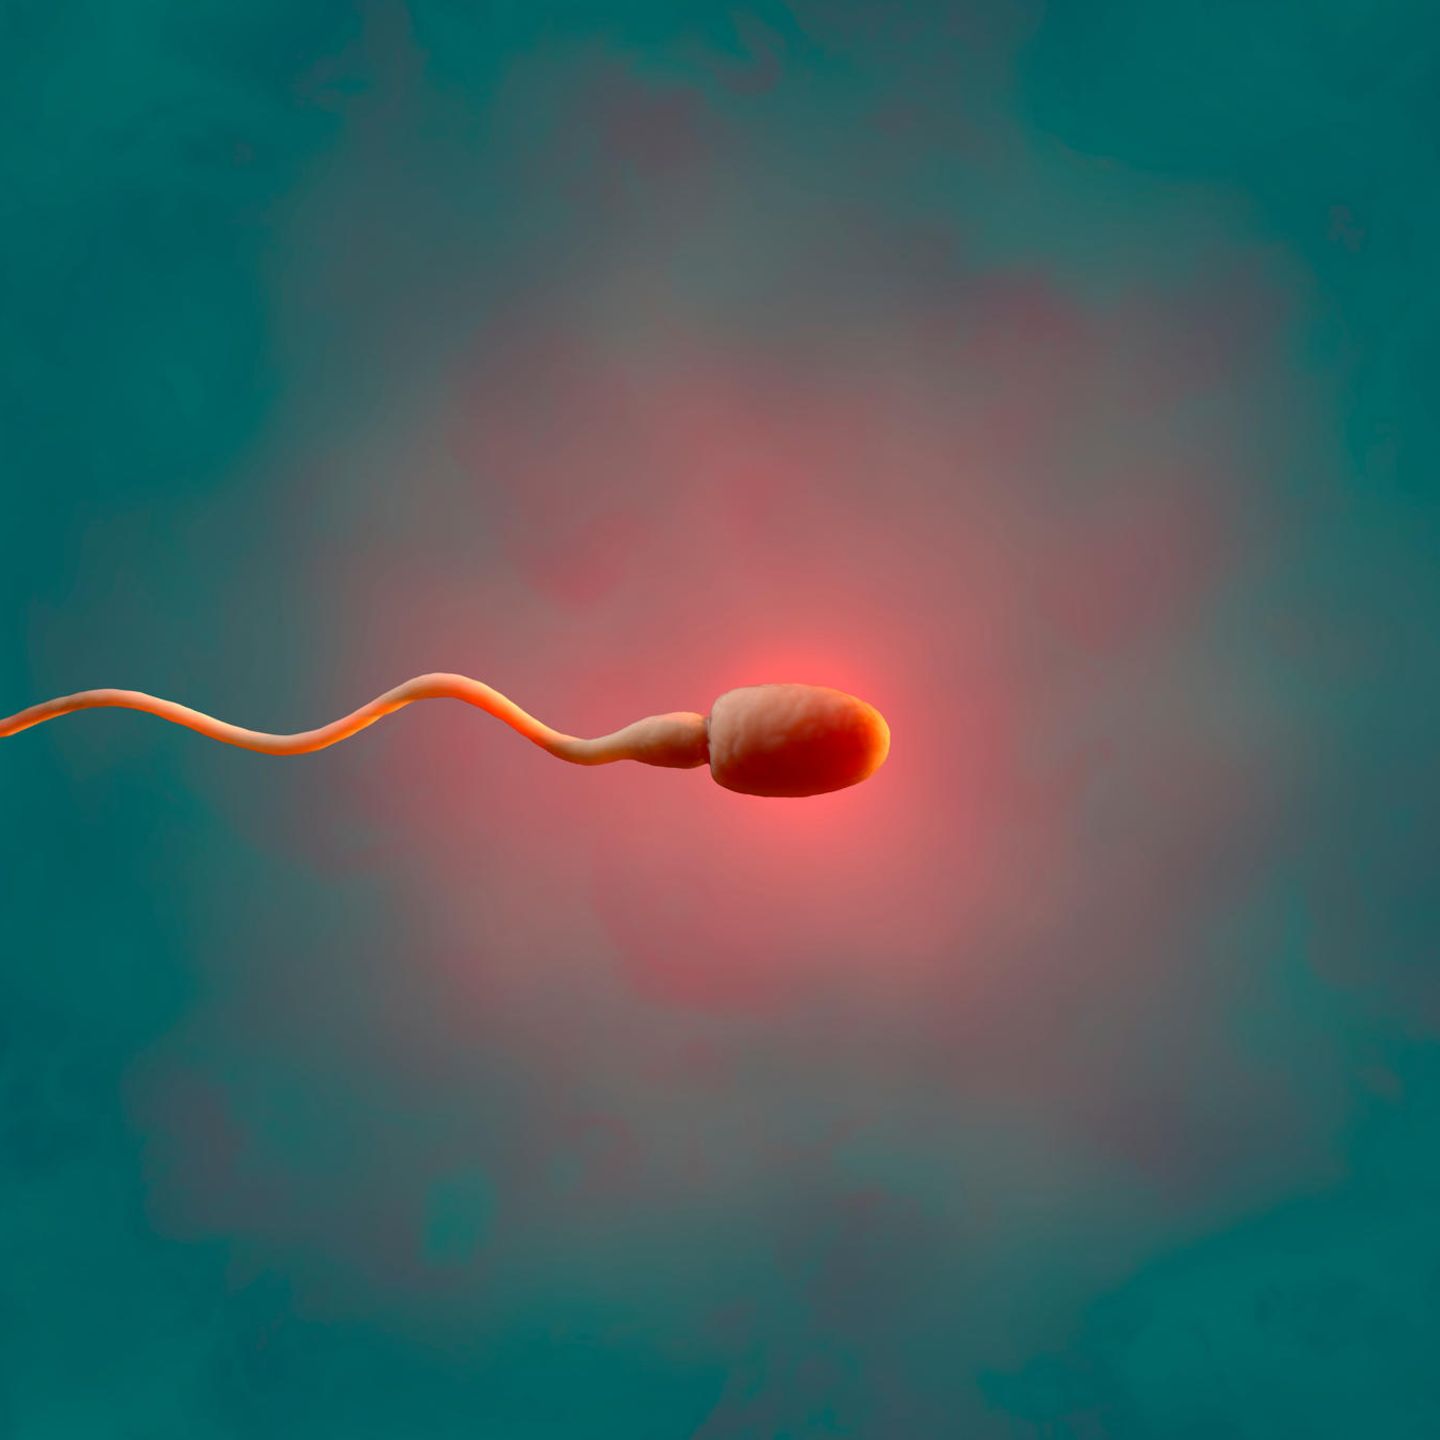 rotgefärbtes Spermium vor grünlichem Hintergrund